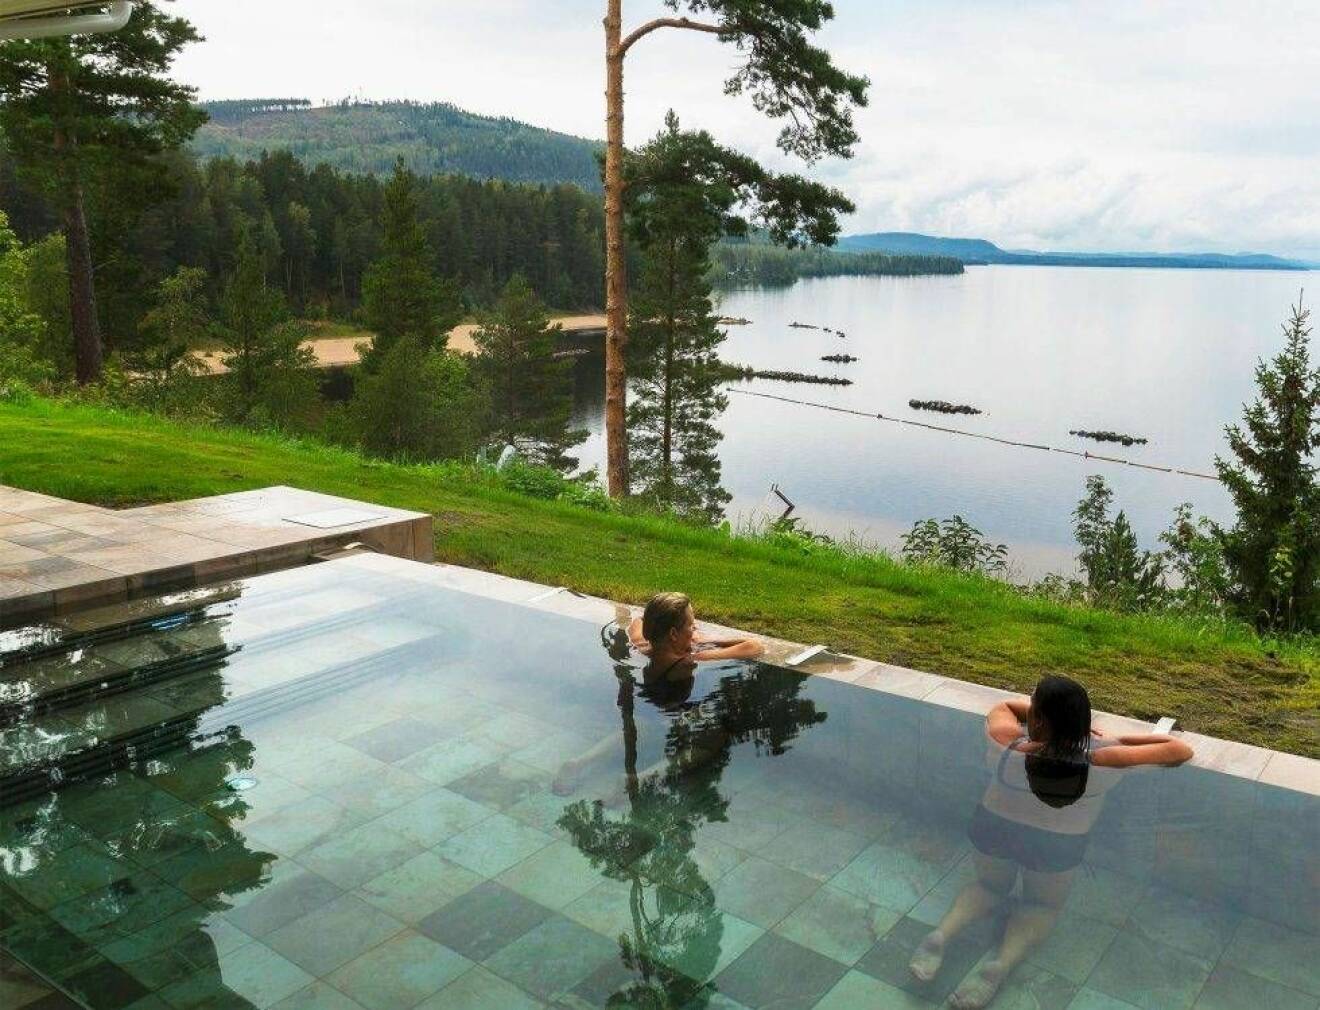 En blank pool utomhus med två personer som blickar ut över den blanka sjön Ljusnan.